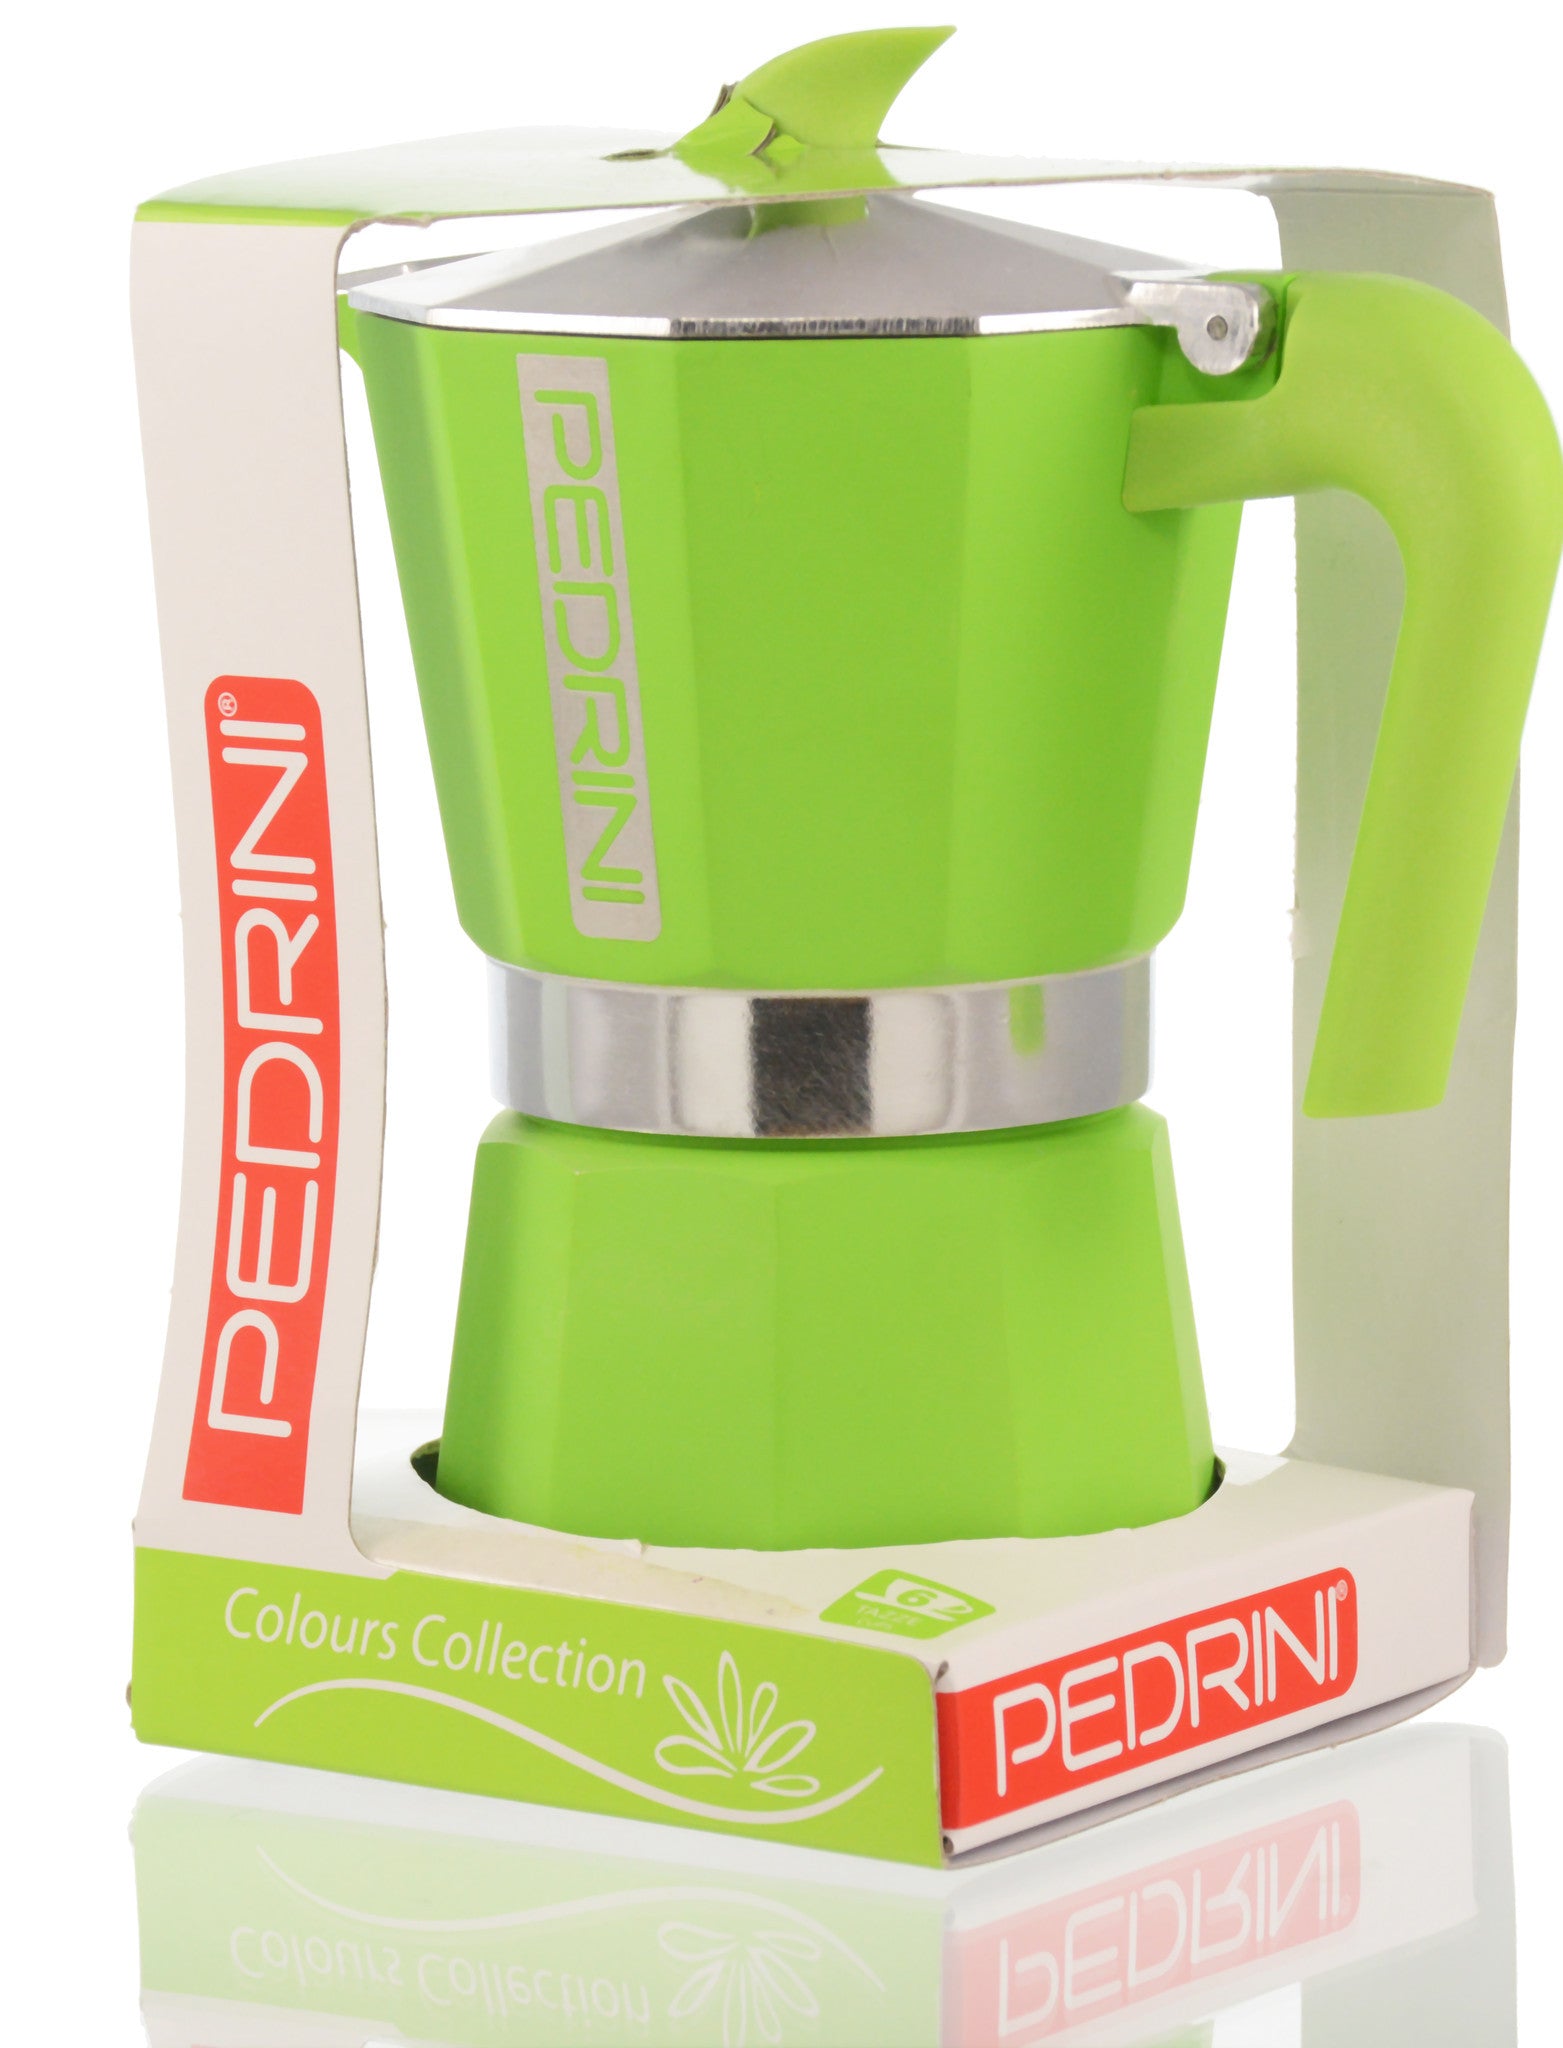 Pedrini, Italian Coffee Maker - Home & Kitchen